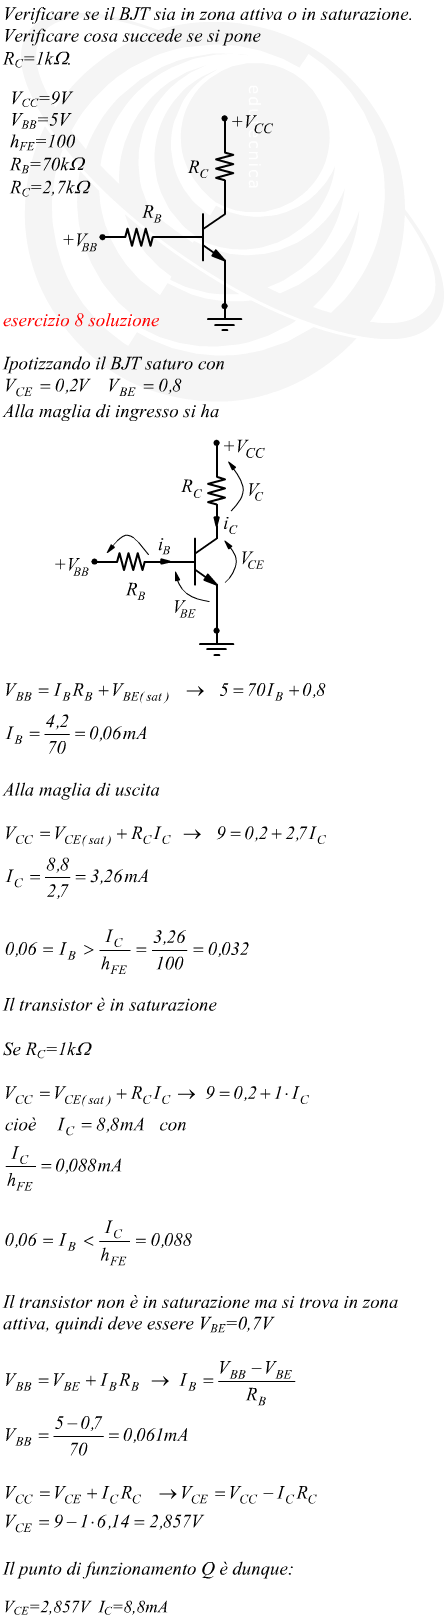 transistor comportamento non lineare saturazione-interdizione